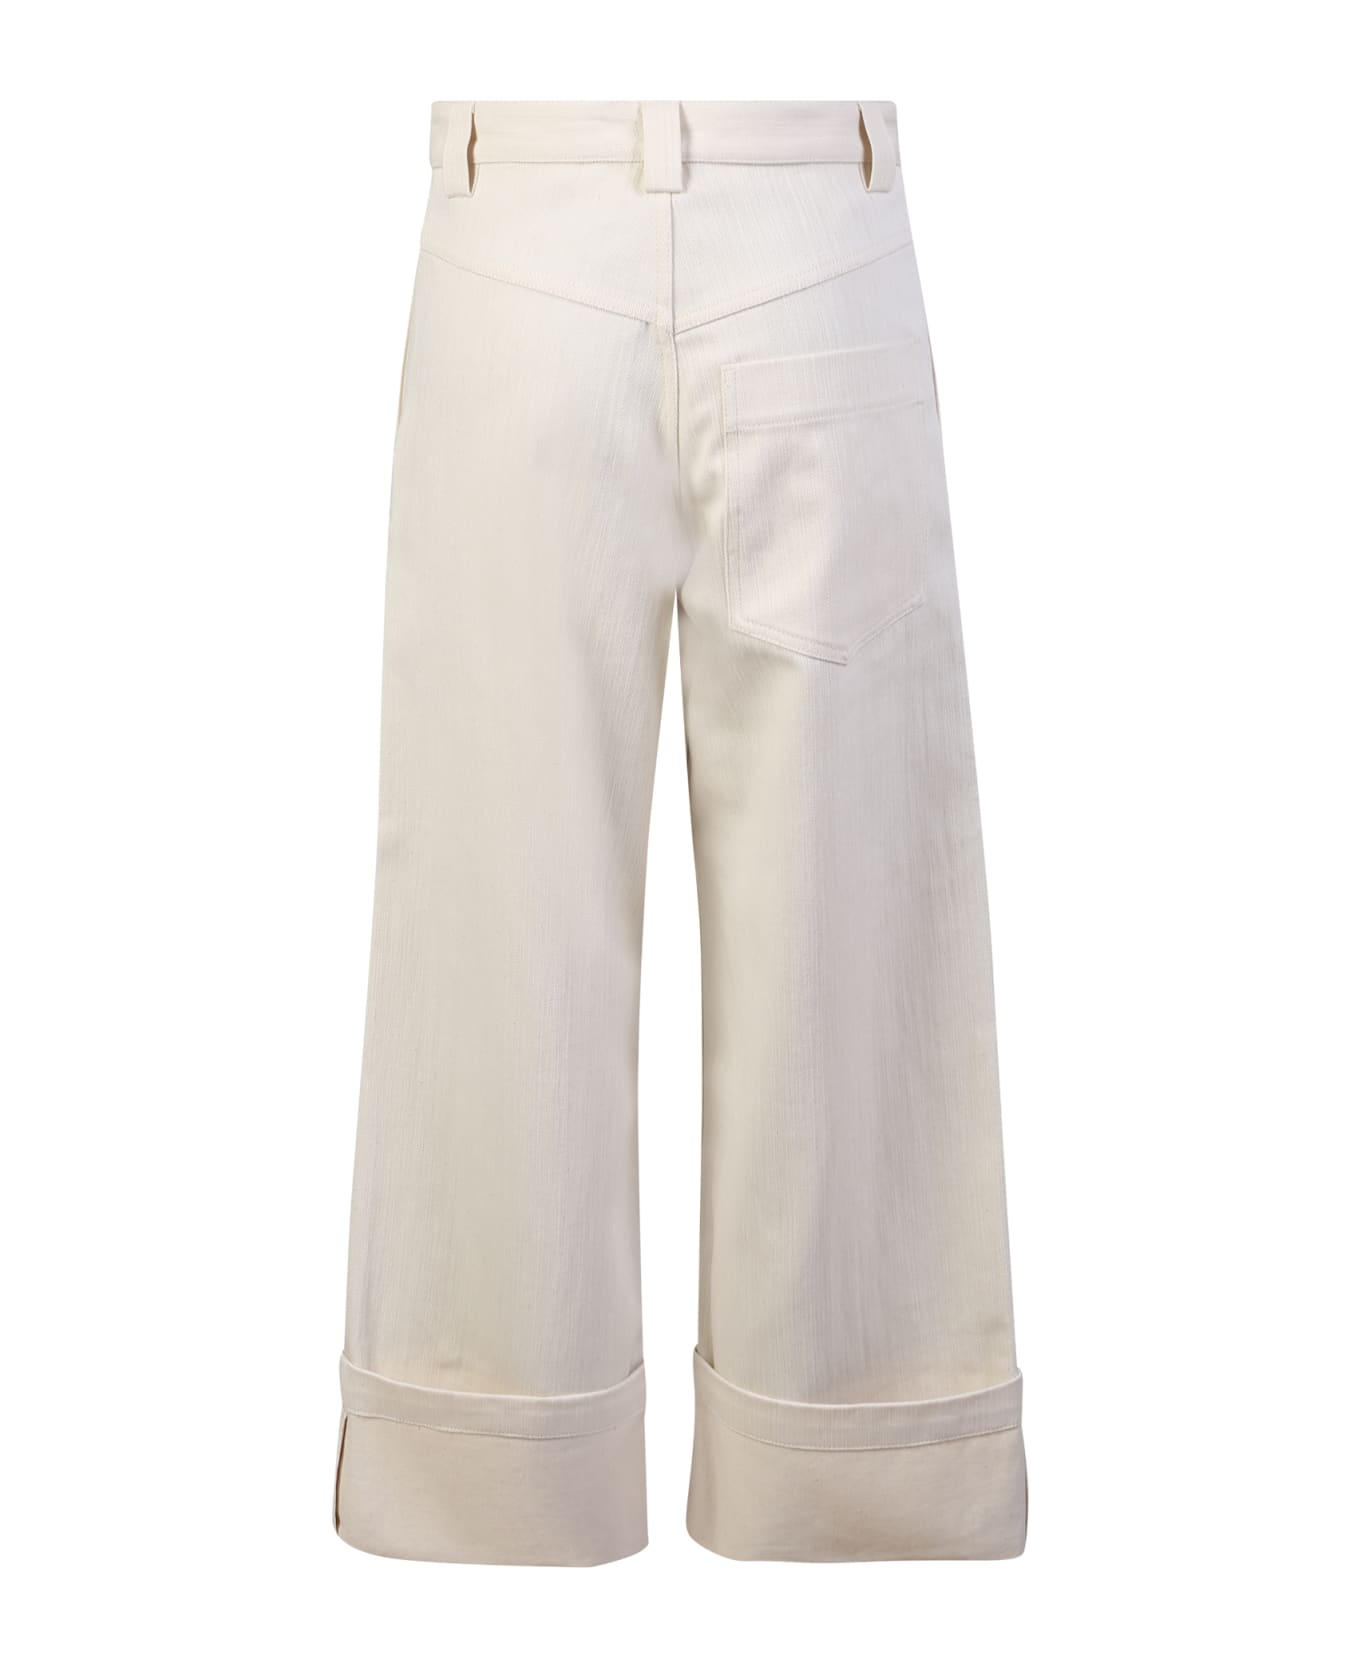 Moncler Genius Turn-up Pants - White